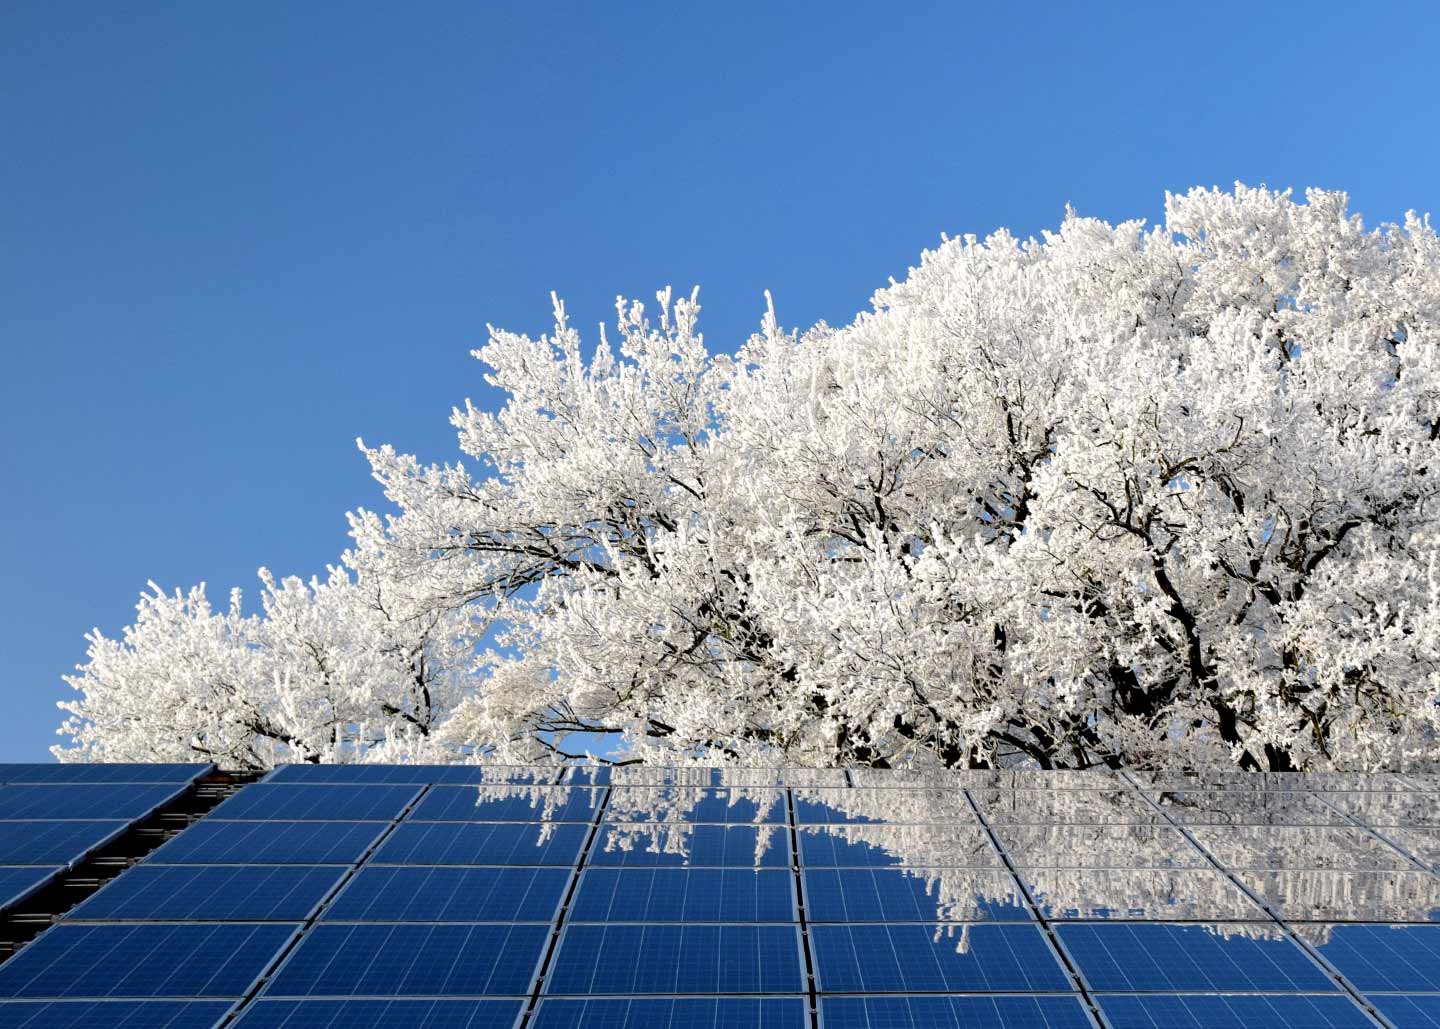 Solarzellen in Winterlandschaft